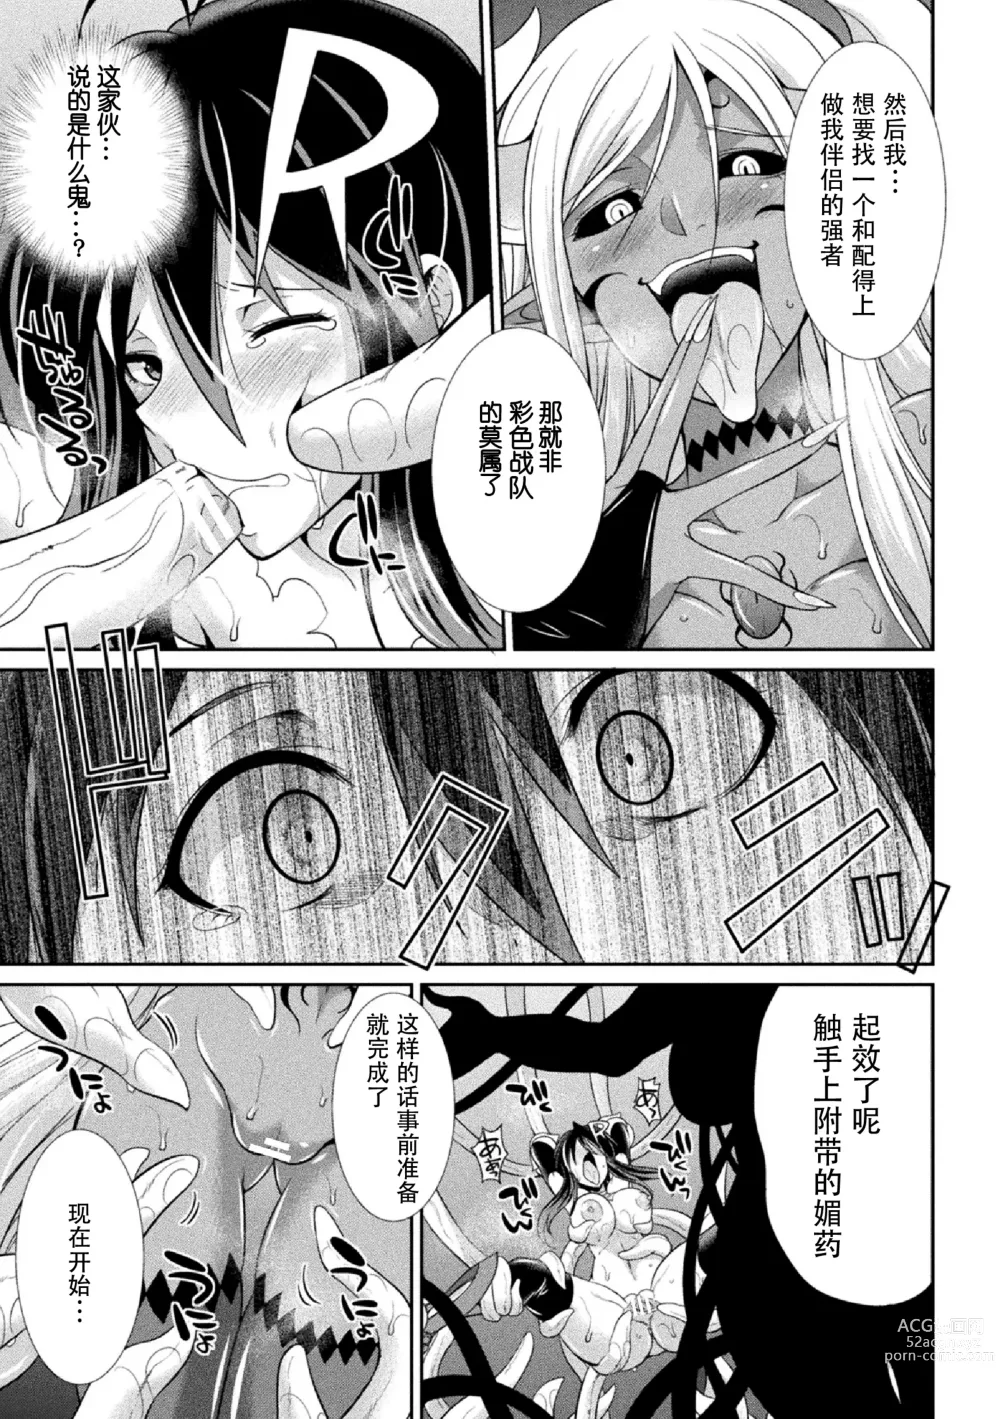 Page 21 of manga Tokumu Sentai Colorful Force Seigi no Heroine vs Shokushu Joou! Futanari Choukyou Daikessen!?